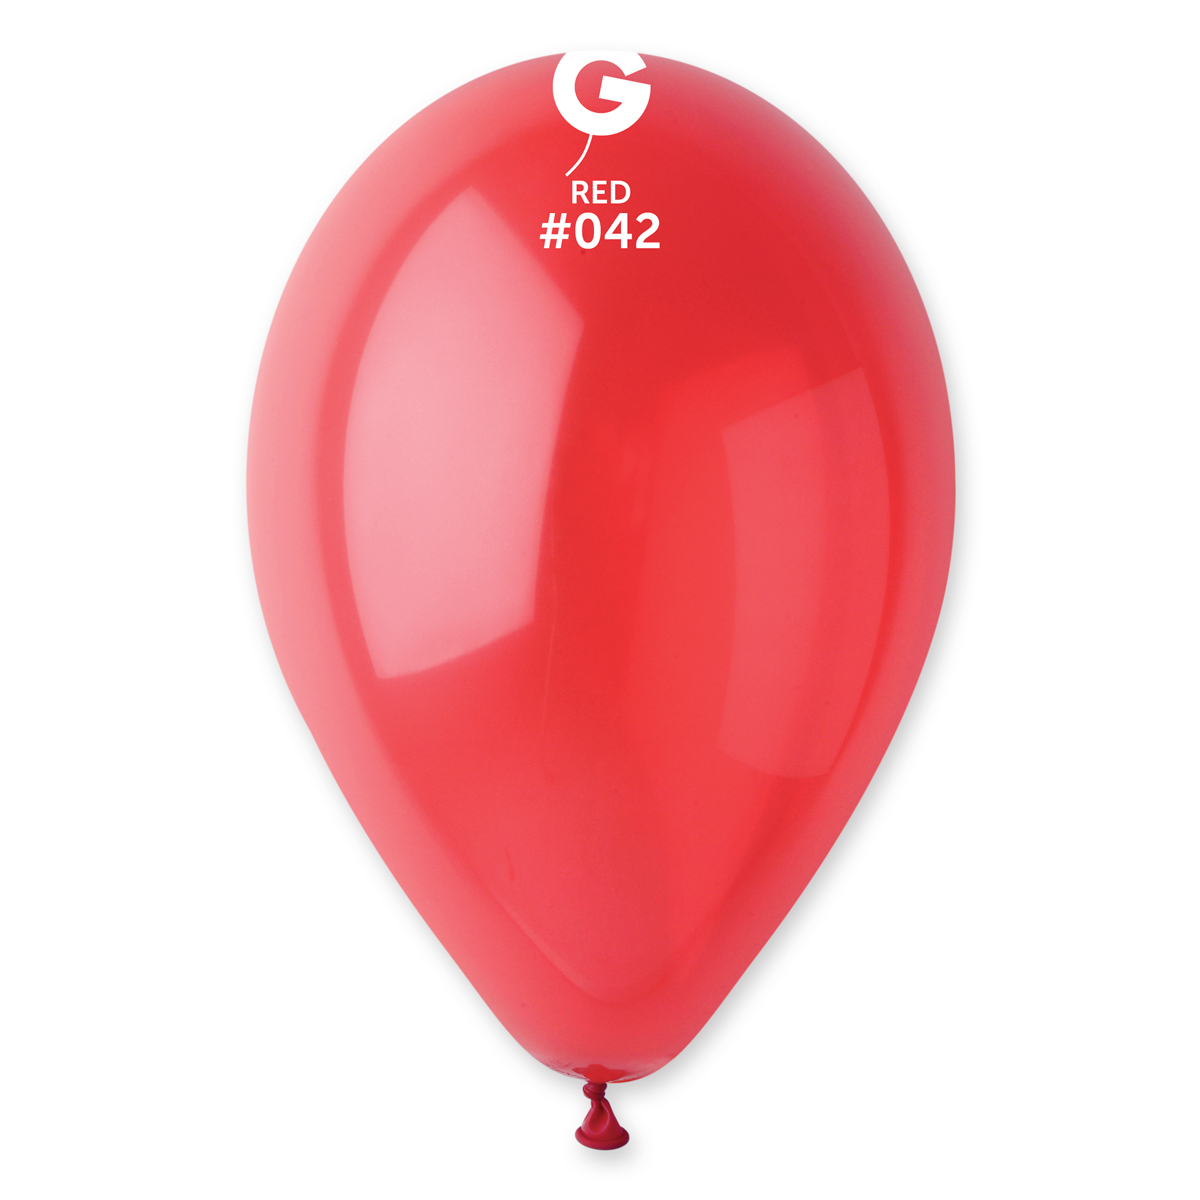 Balónik pastelový červený 26 cm